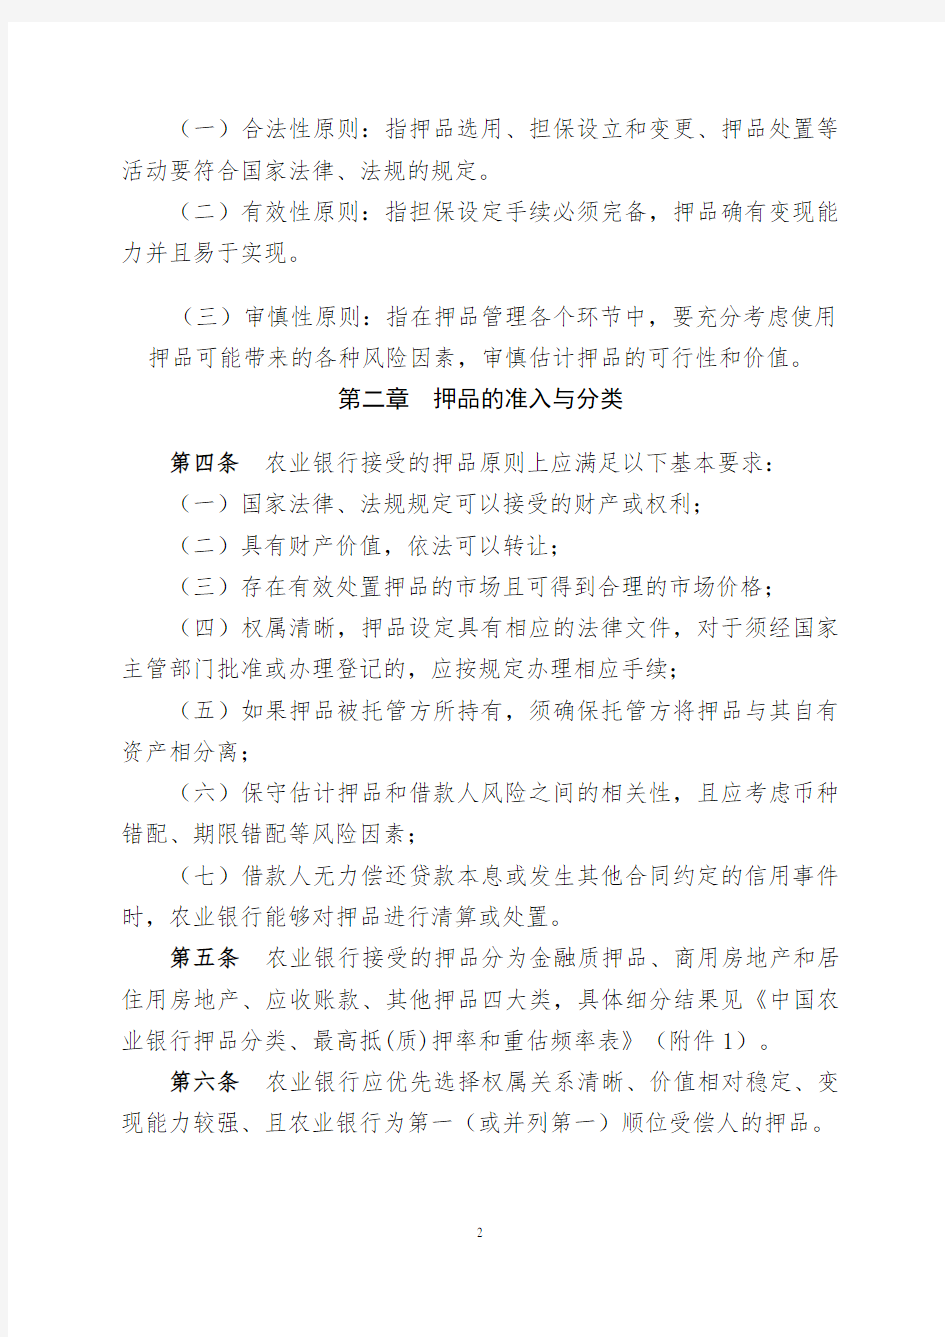 中国农业银行押品管理办法(试行)